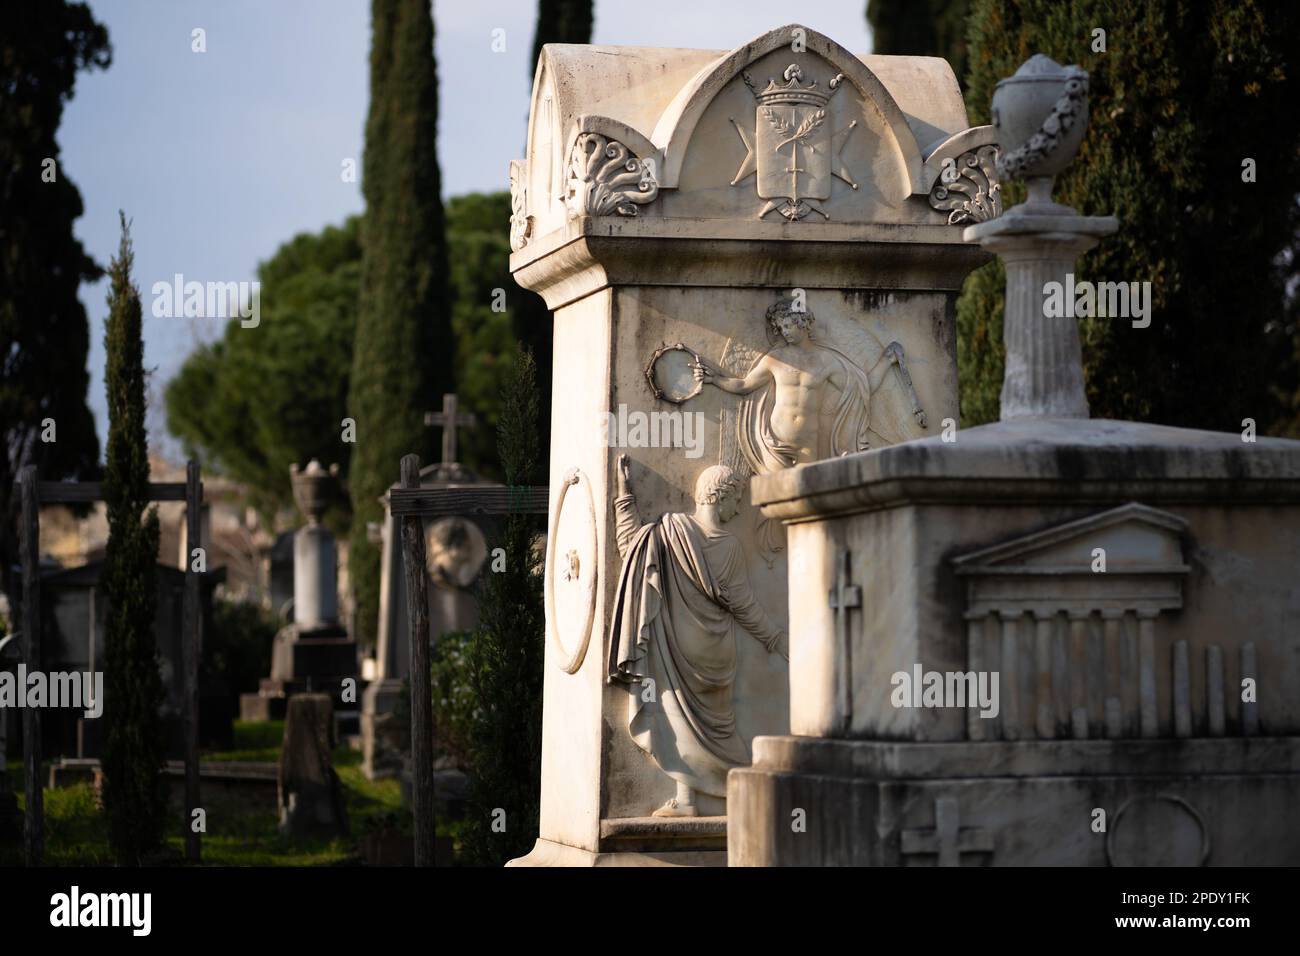 Le cimetière anglais ou protestant de Florence, Italie. Parmi les tombeaux, il y a celui du poète Elizabeth Barrett Browning et de Fanny Holman-Hunt Banque D'Images